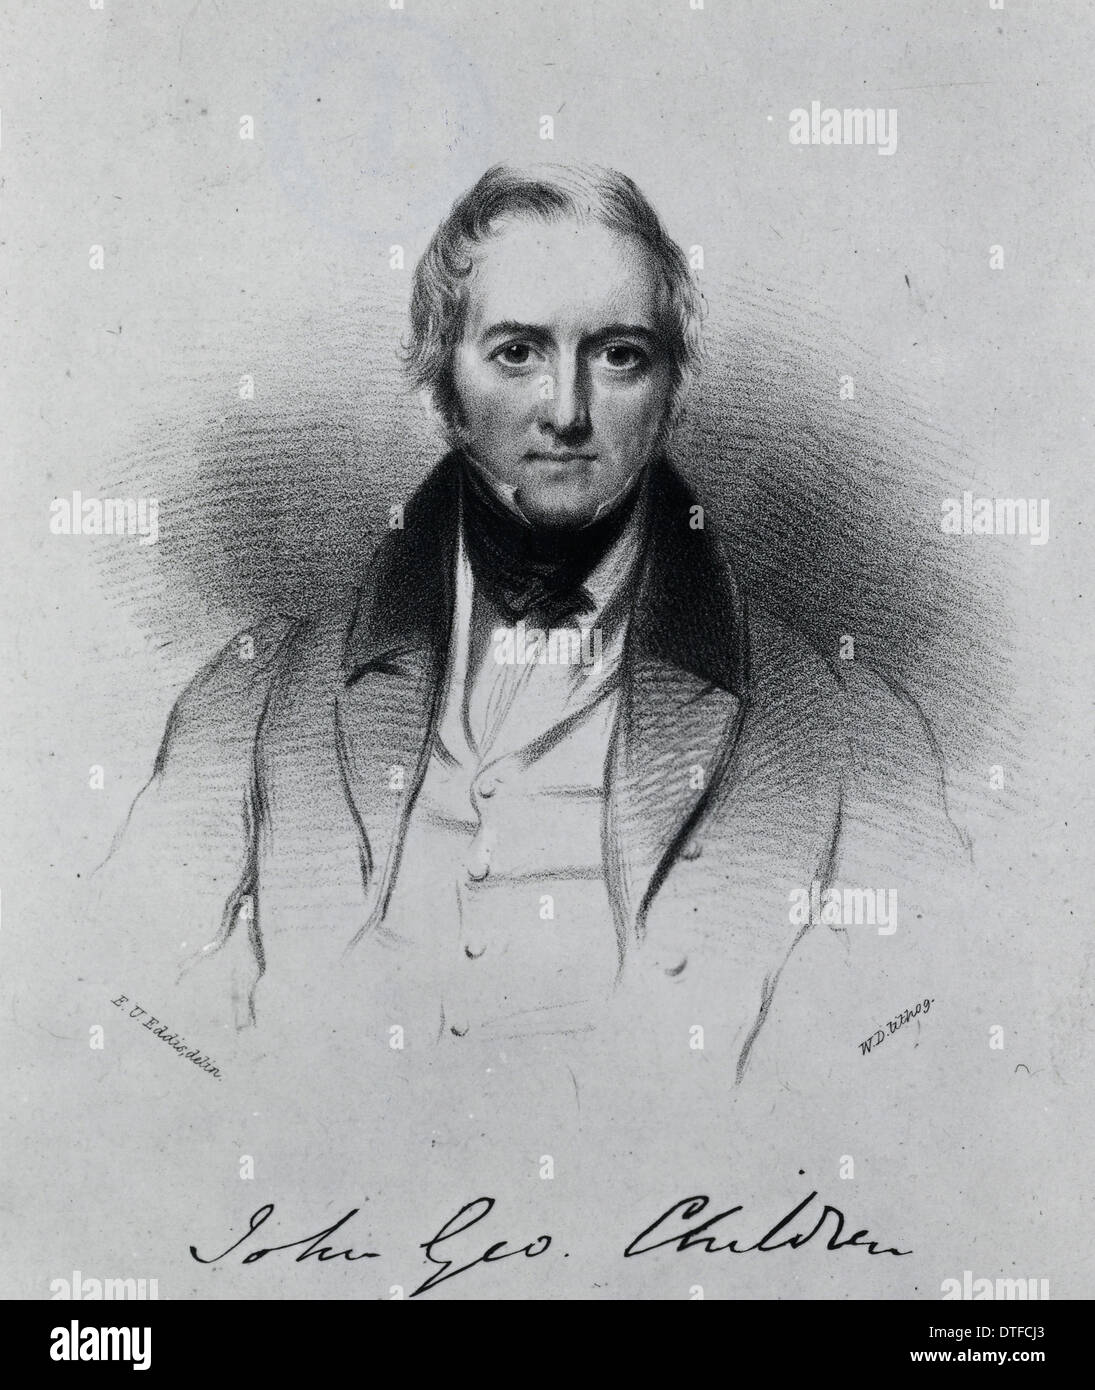 J[C] ohn George Bambini (1777-1852) Foto Stock